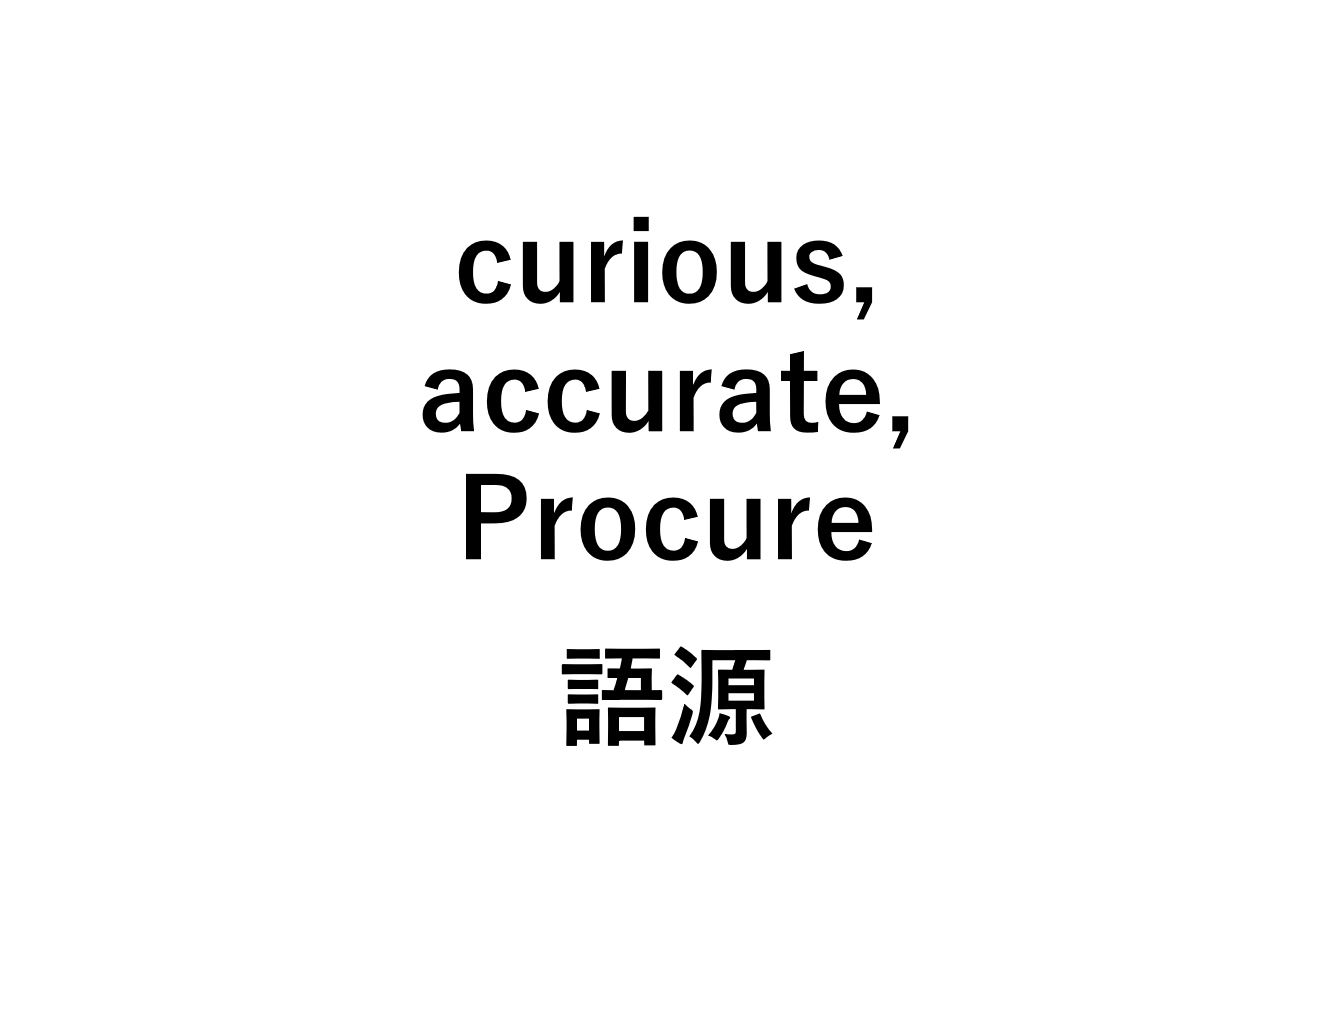 英語語源 Curious Accurate Procure の意味 Cure 死ぬほどわかる英文法ブログ